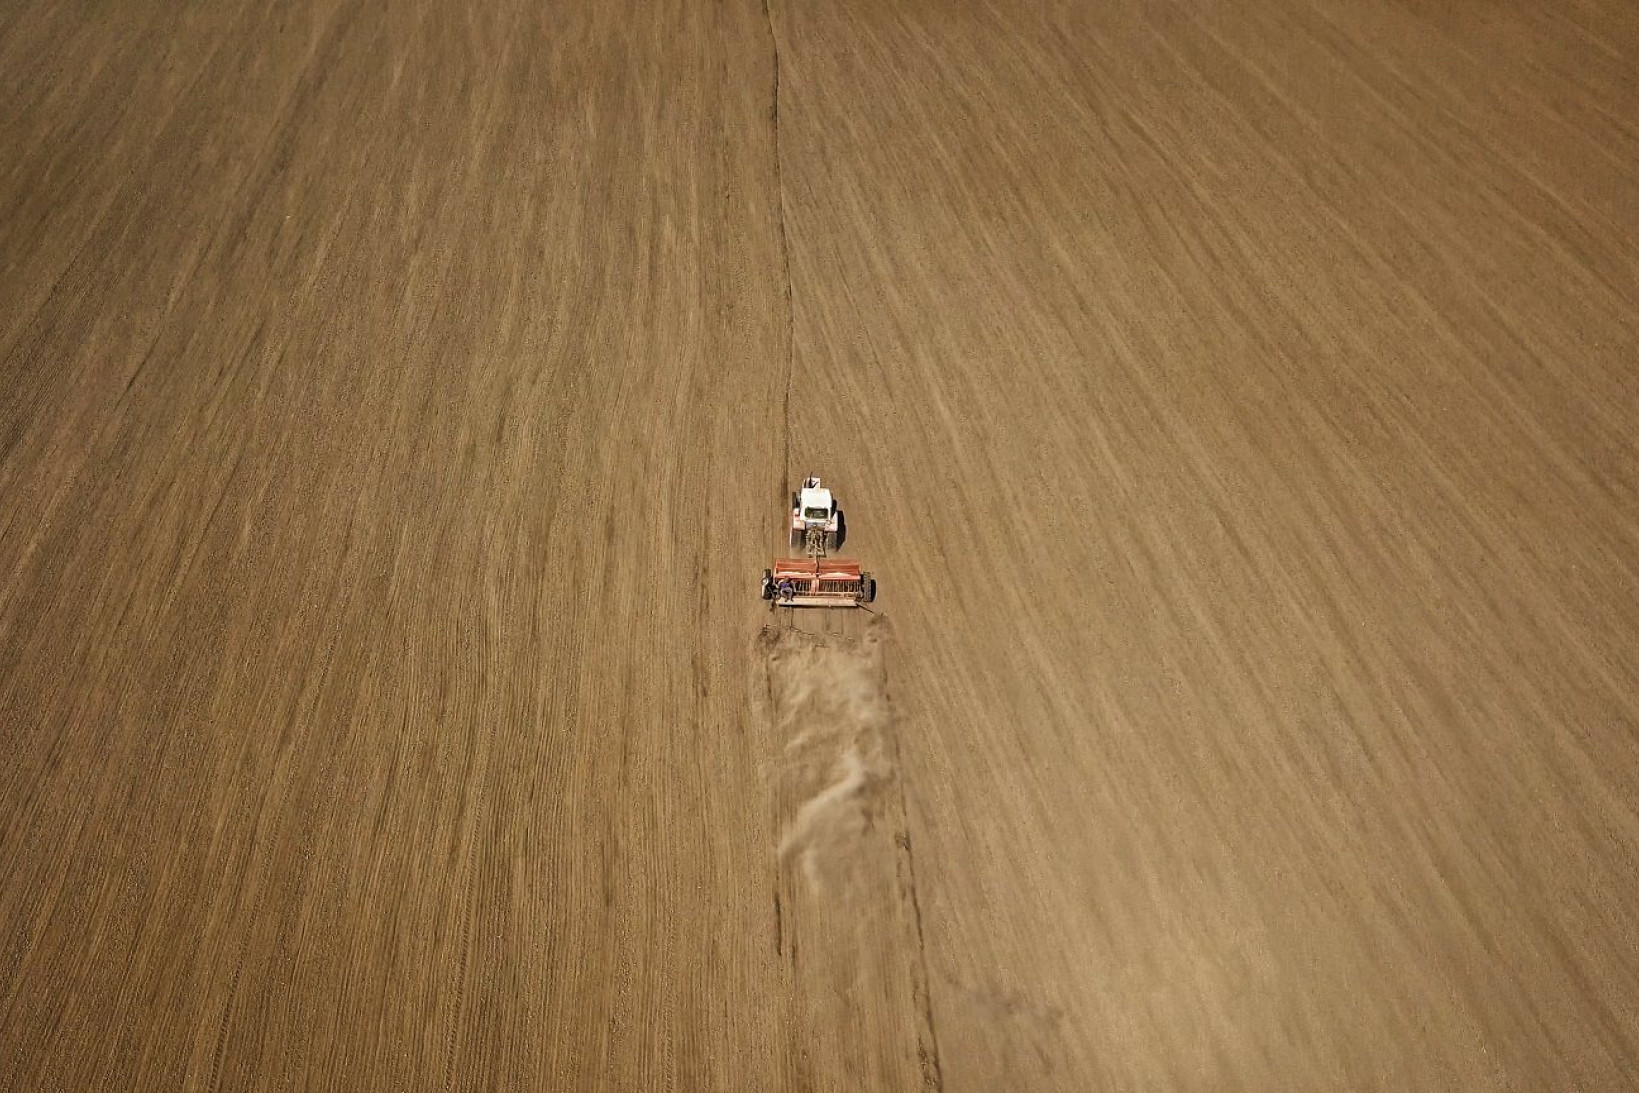 Luftfoto af en traktor, der kører over en hvedemark